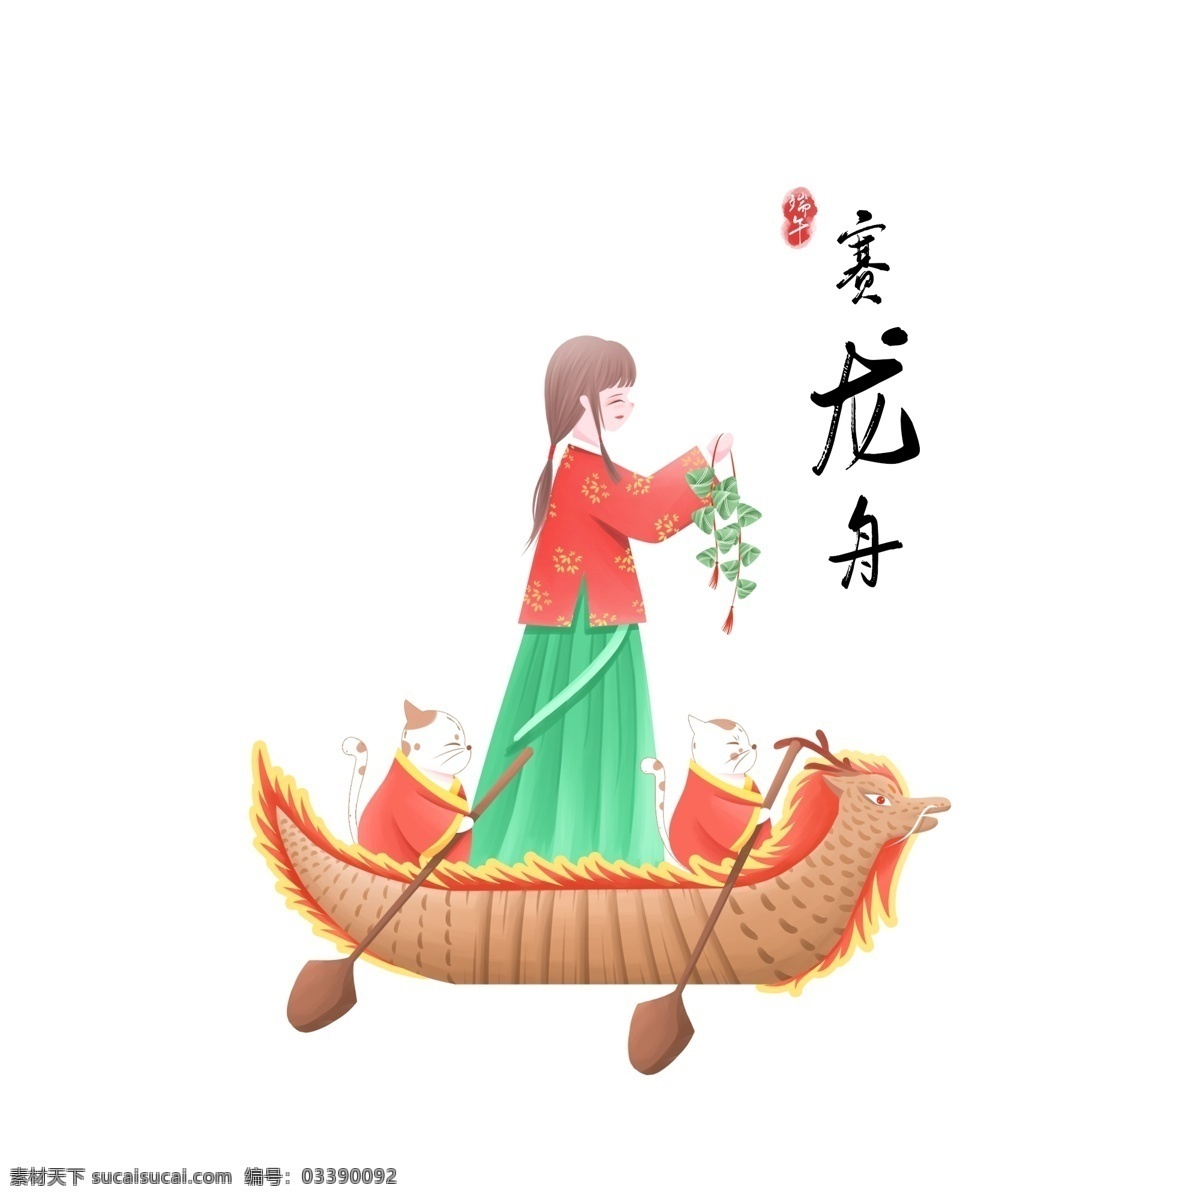 端午节 中国 风 小 清新 插画 元素 赛 龙舟 赛龙舟 船 粽子 猫 女孩 治愈 可爱 中国风